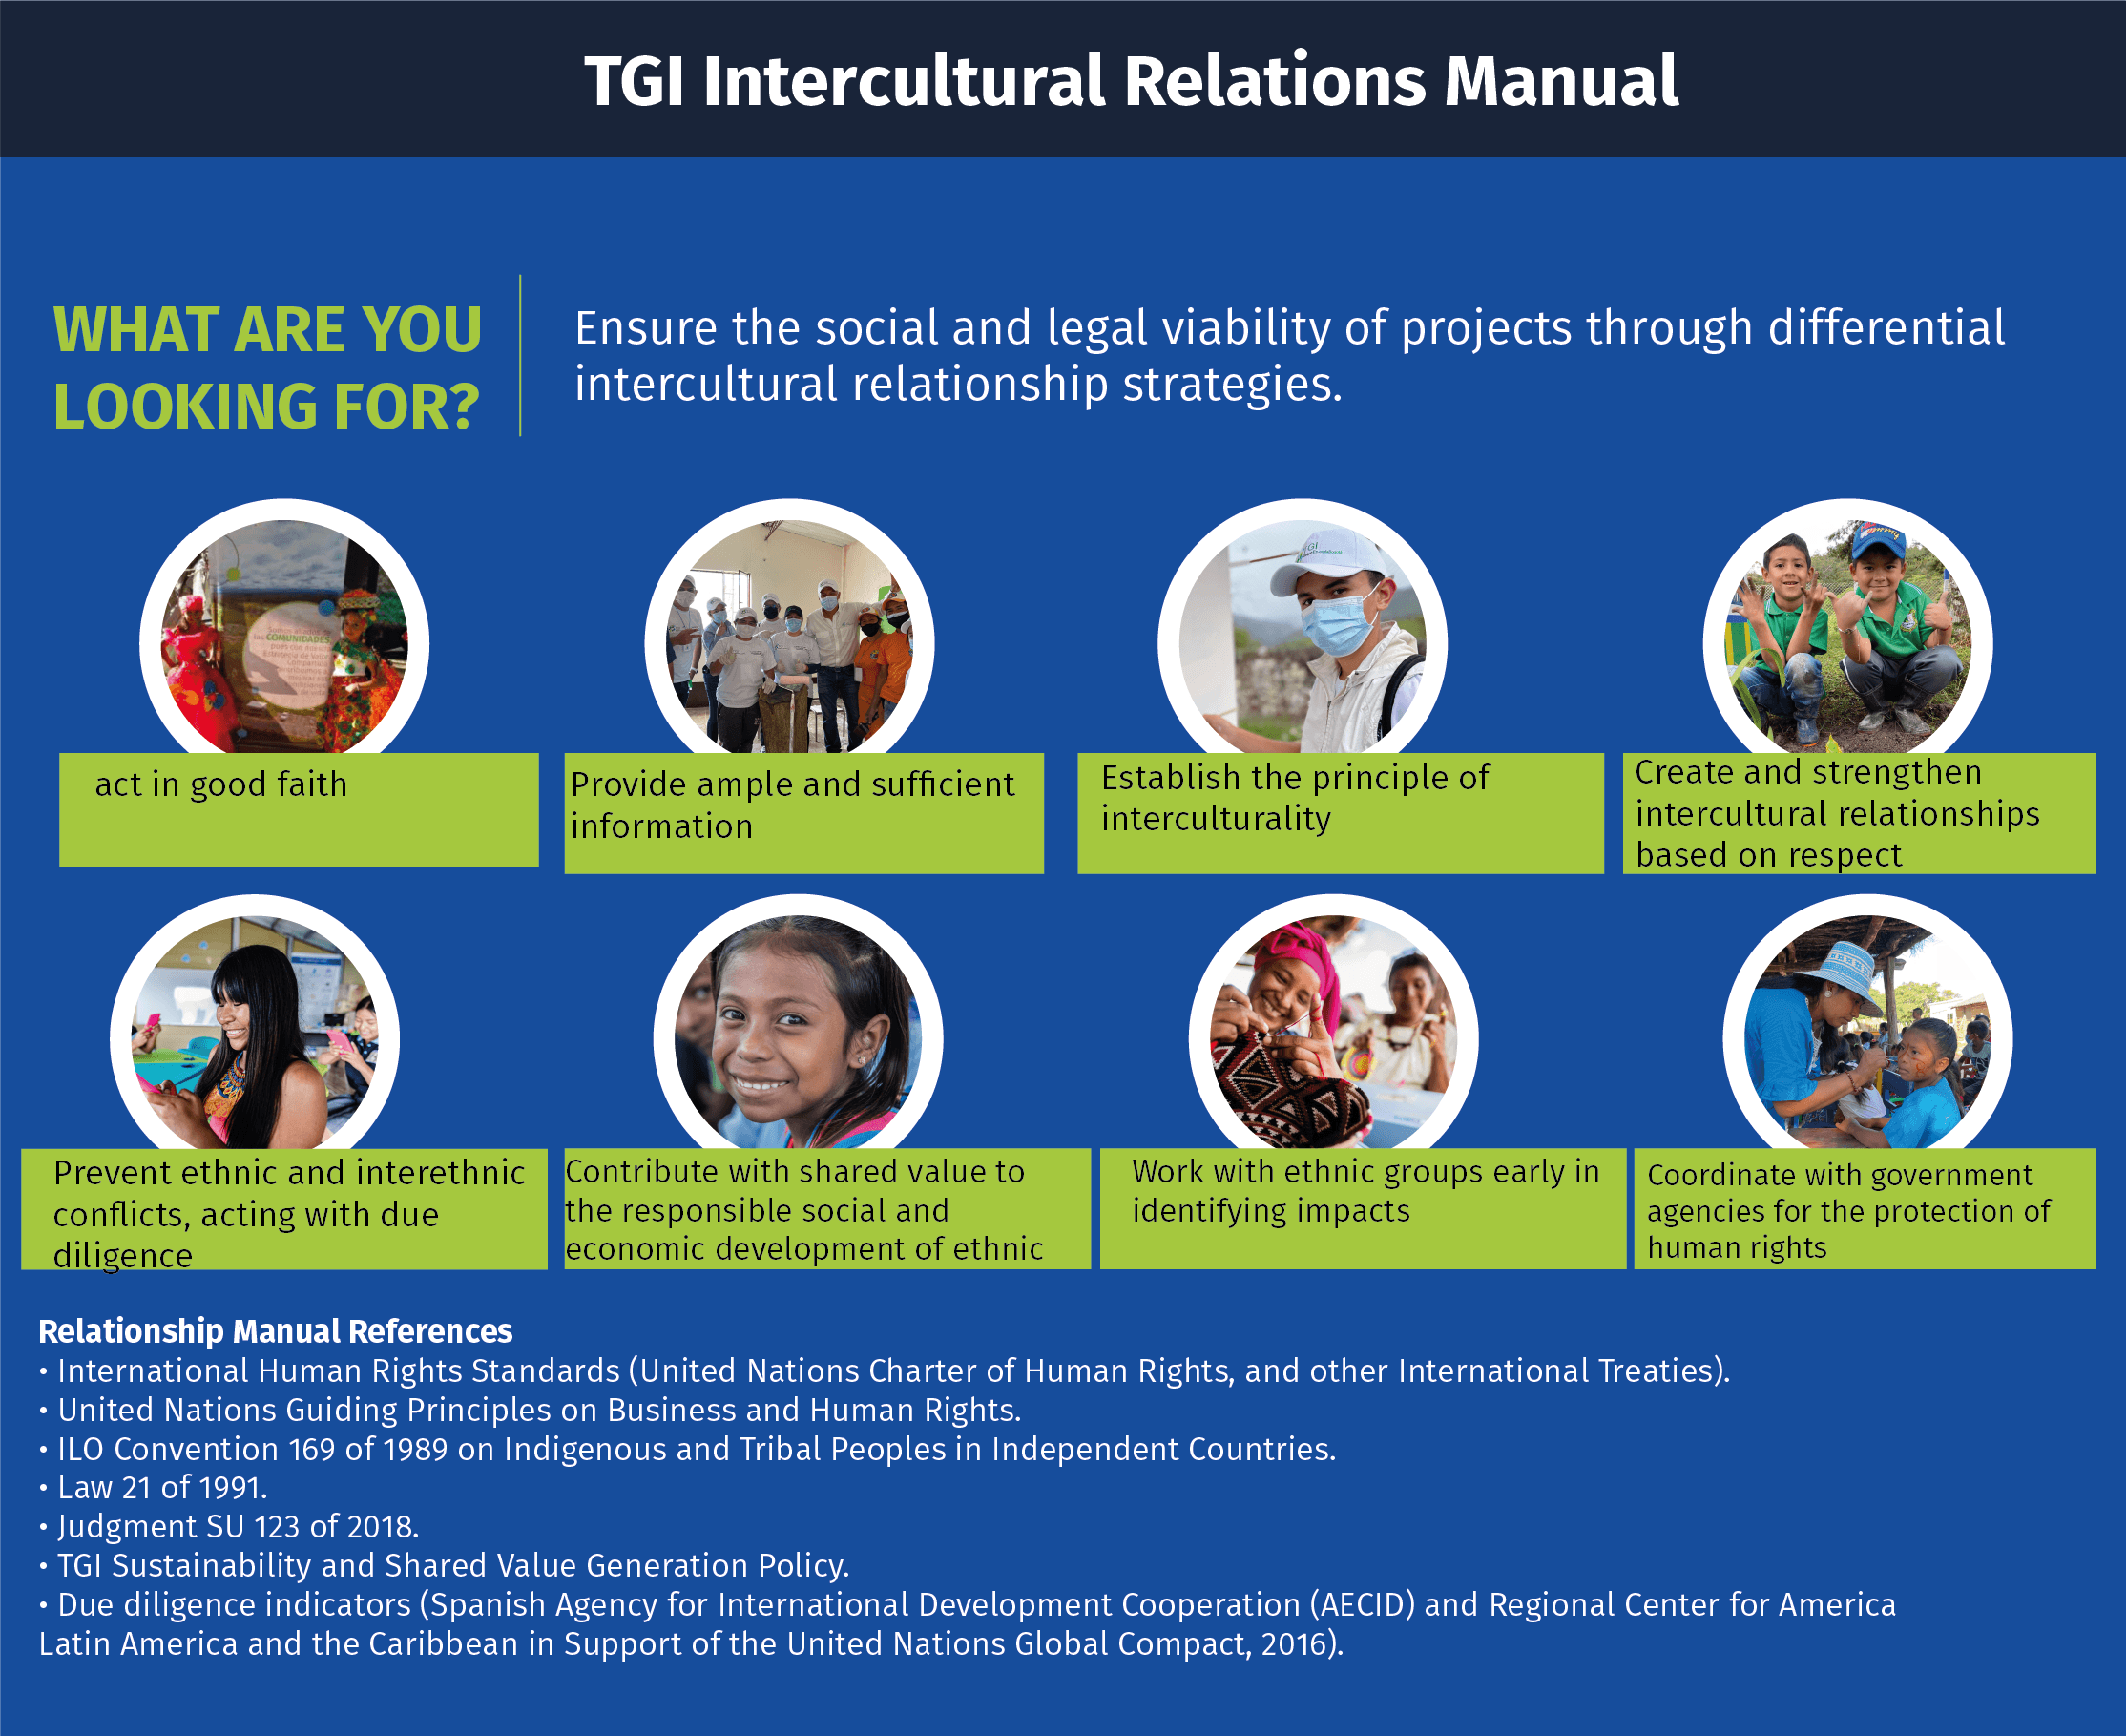 TGI Intercultural Relations Manual@2x-8.png